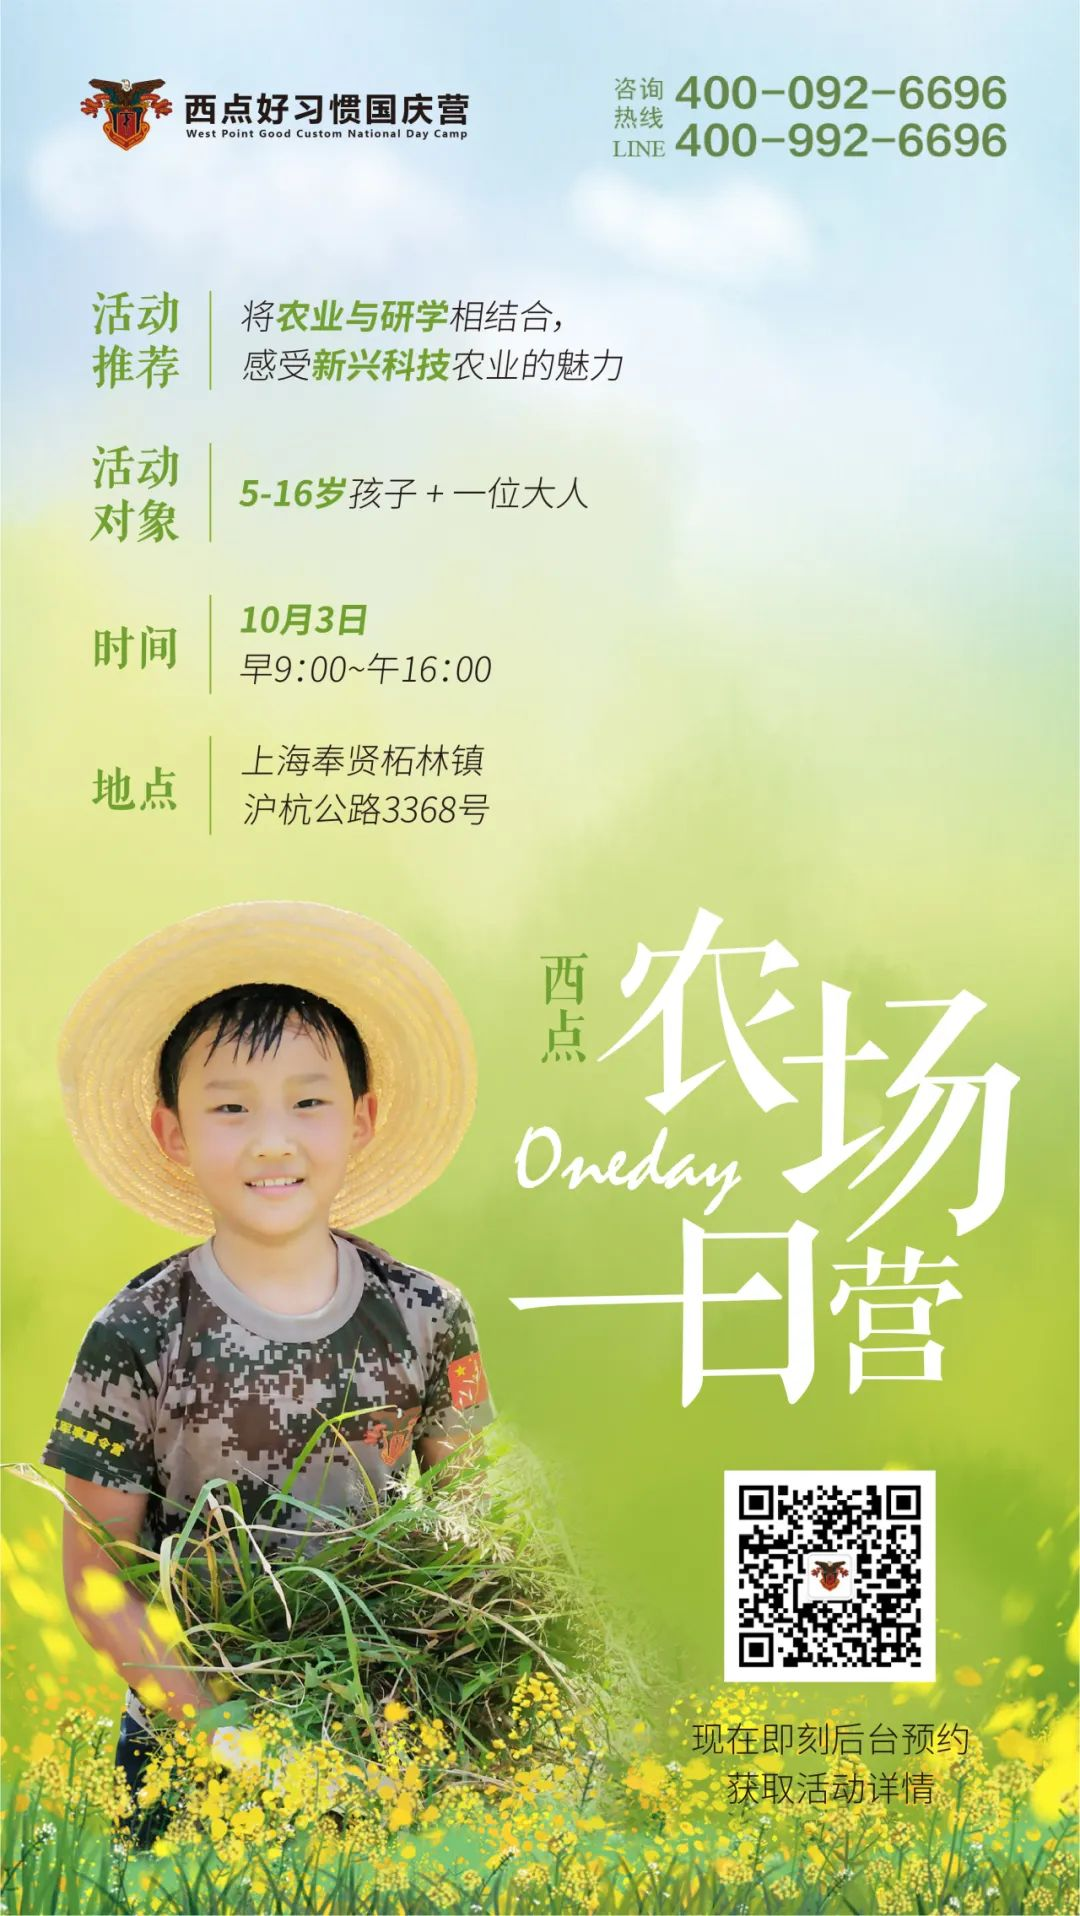 【上海本地亲子营】十一悠然农场一日营开始预定，228一大一小够玩一天！,亲子活动